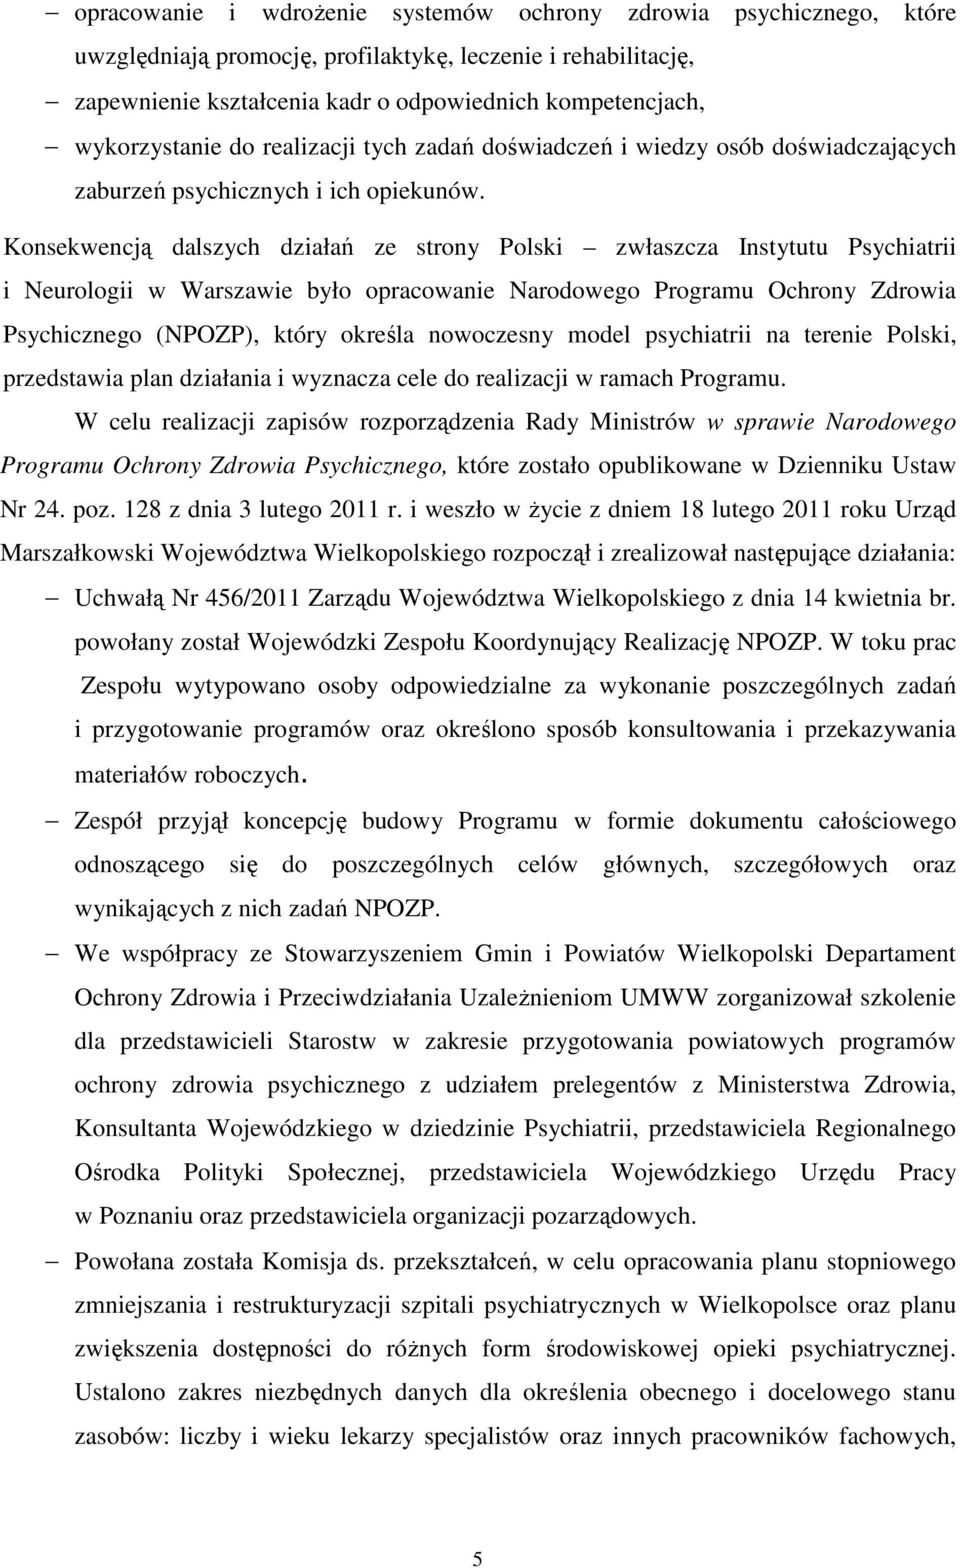 Konsekwencją dalszych działań ze strony Polski zwłaszcza Instytutu Psychiatrii i Neurologii w Warszawie było opracowanie Narodowego Programu Ochrony Zdrowia Psychicznego (NPOZP), który określa